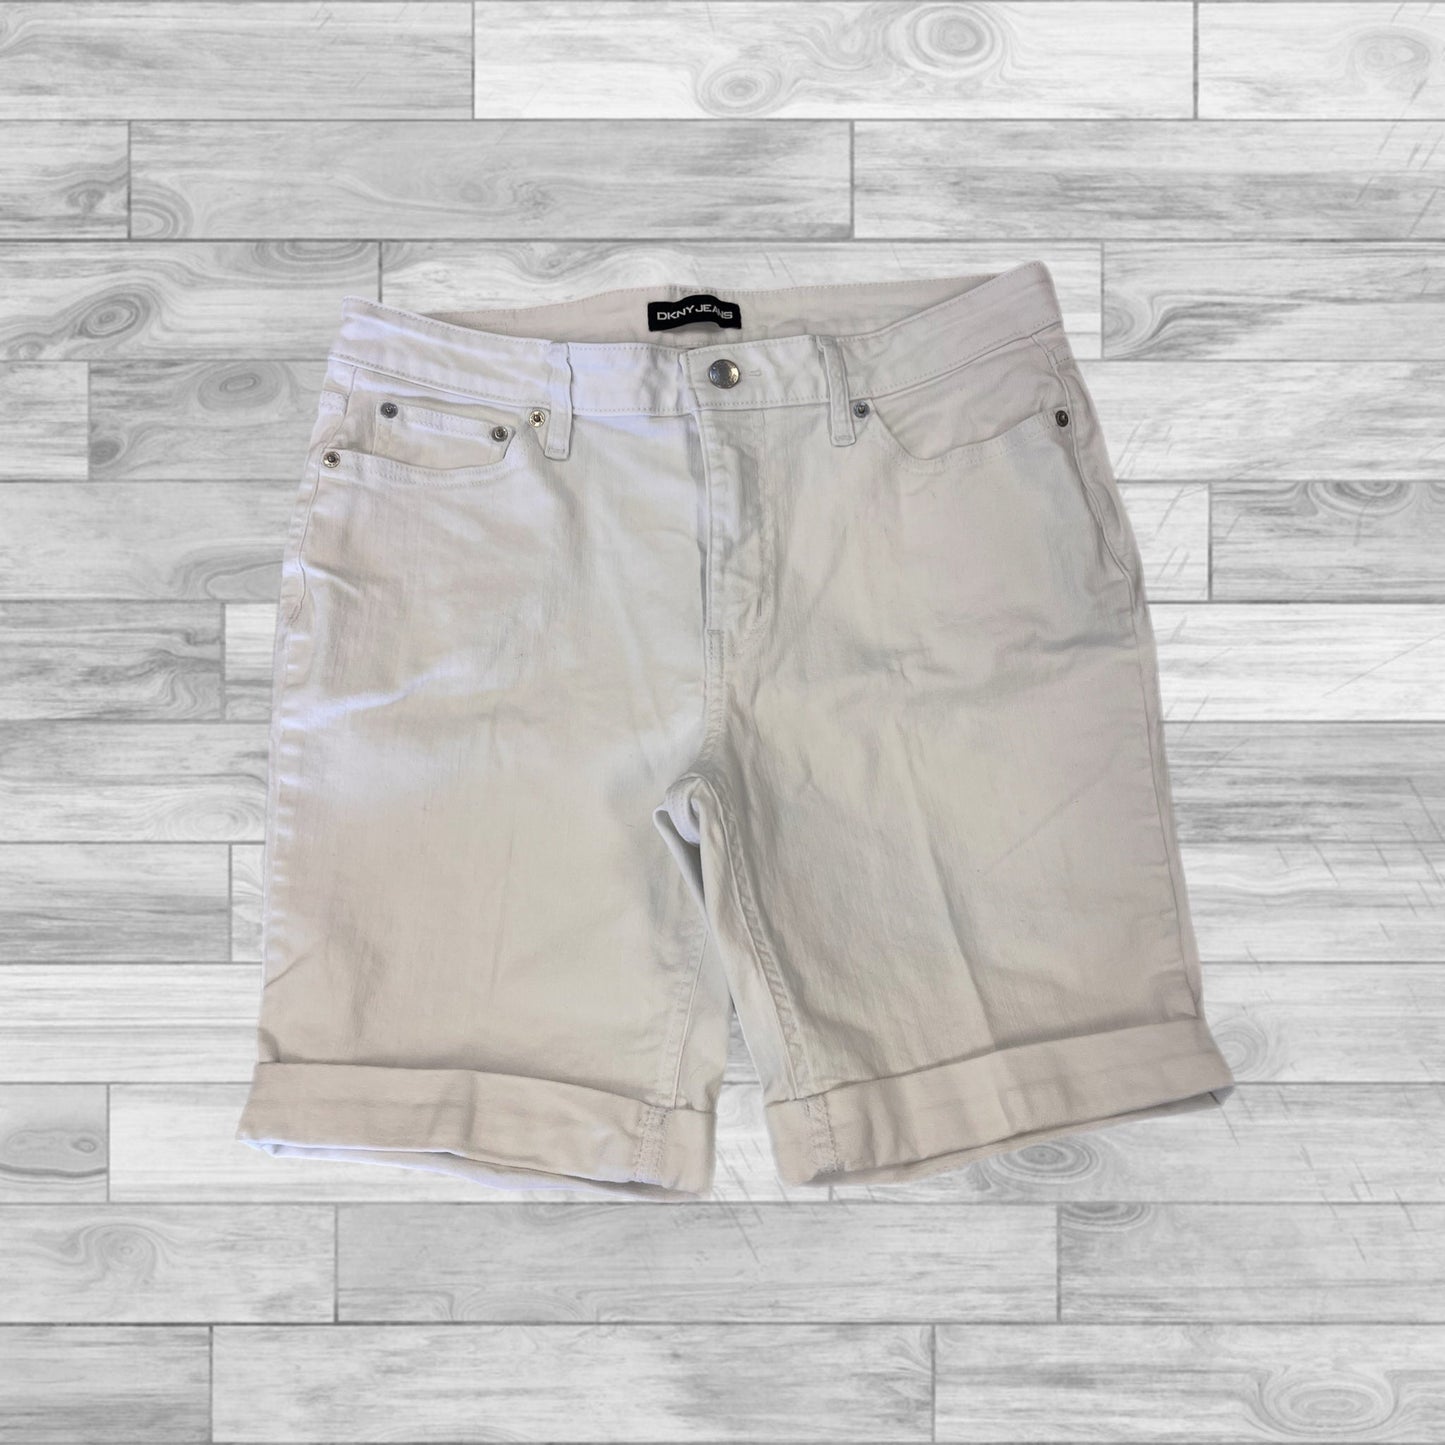 White Shorts Dkny, Size 14